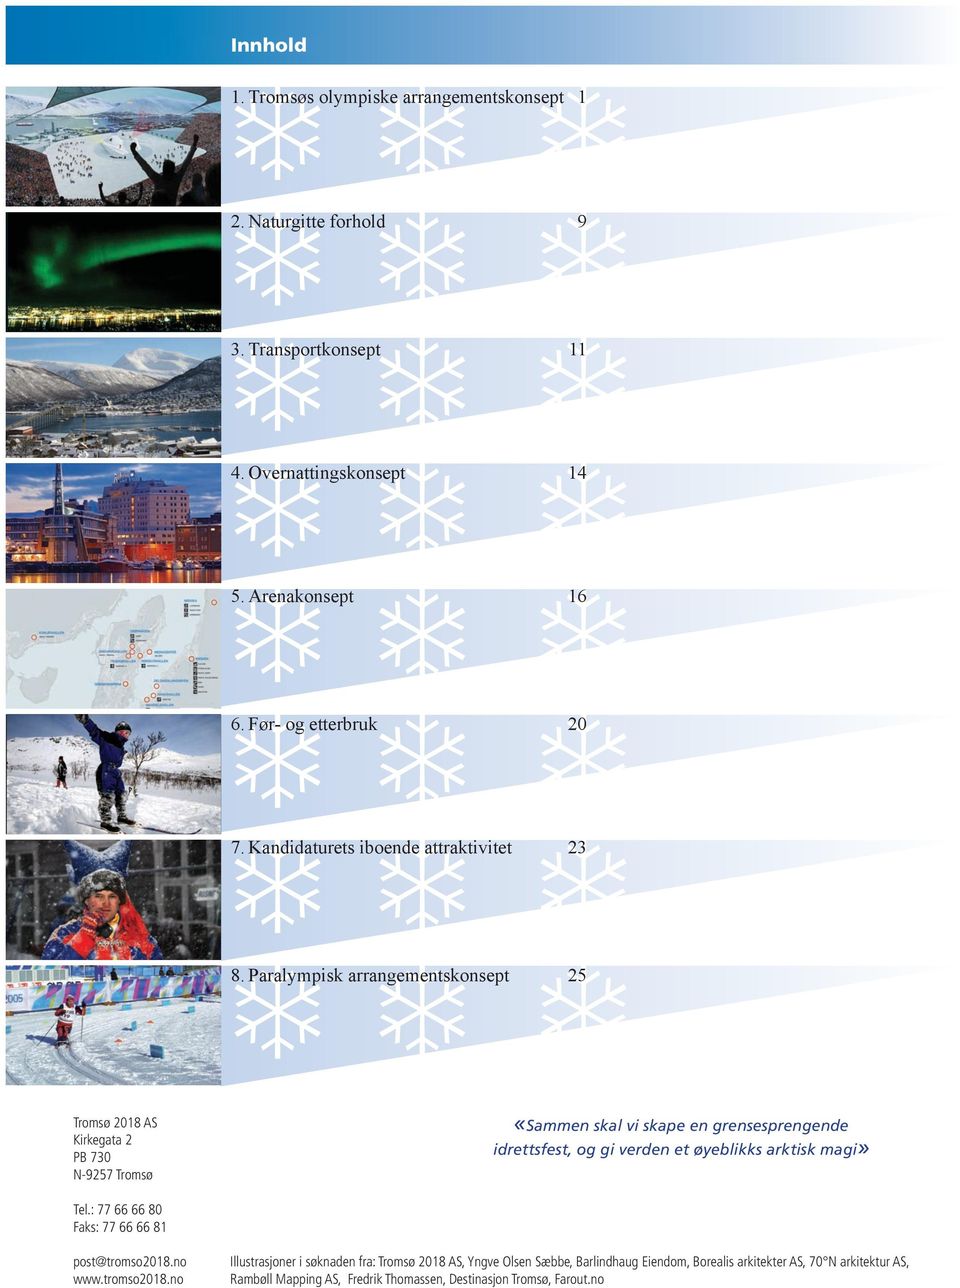 Paralympisk arrangementskonsept 25 Tromsø 2018 AS Kirkegata 2 PB 730 N-9257 Tromsø «Sammen skal vi skape en grensesprengende idrettsfest, og gi verden et øyeblikks